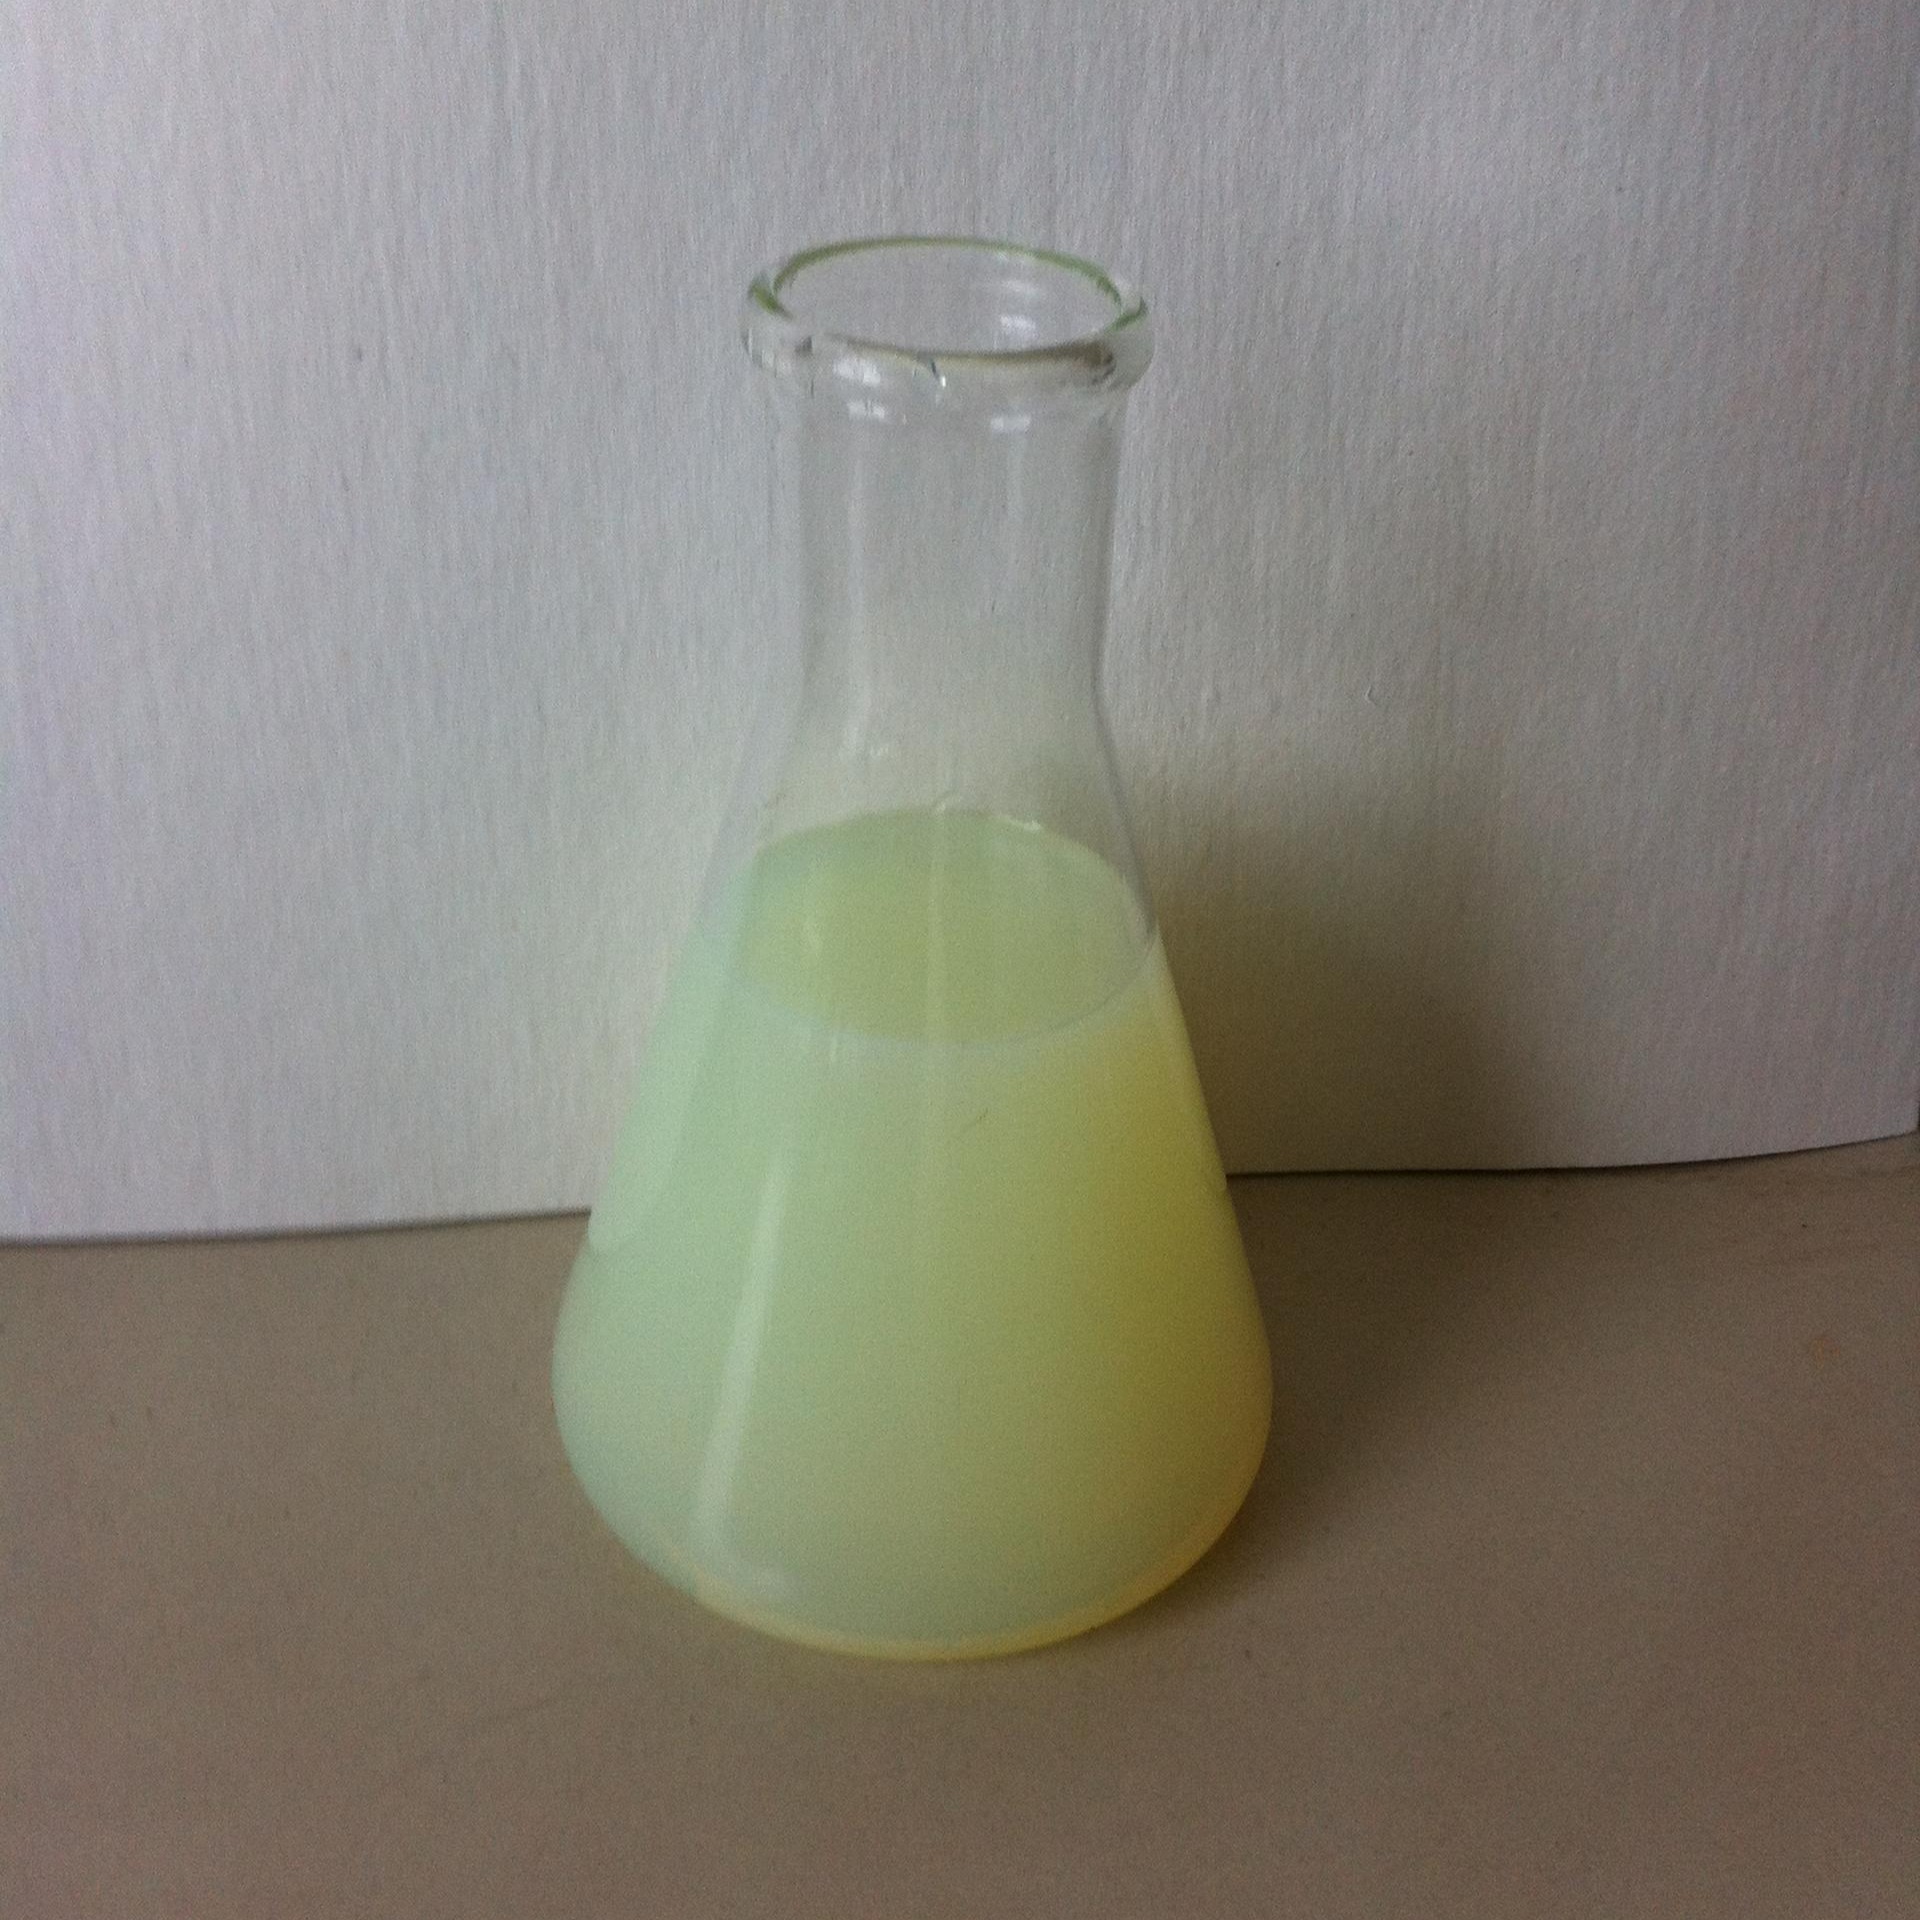 机油乳化剂 复配型机油乳化剂 乳化机油具有良好的乳化 润滑 分散性能 阿切斯化工图片